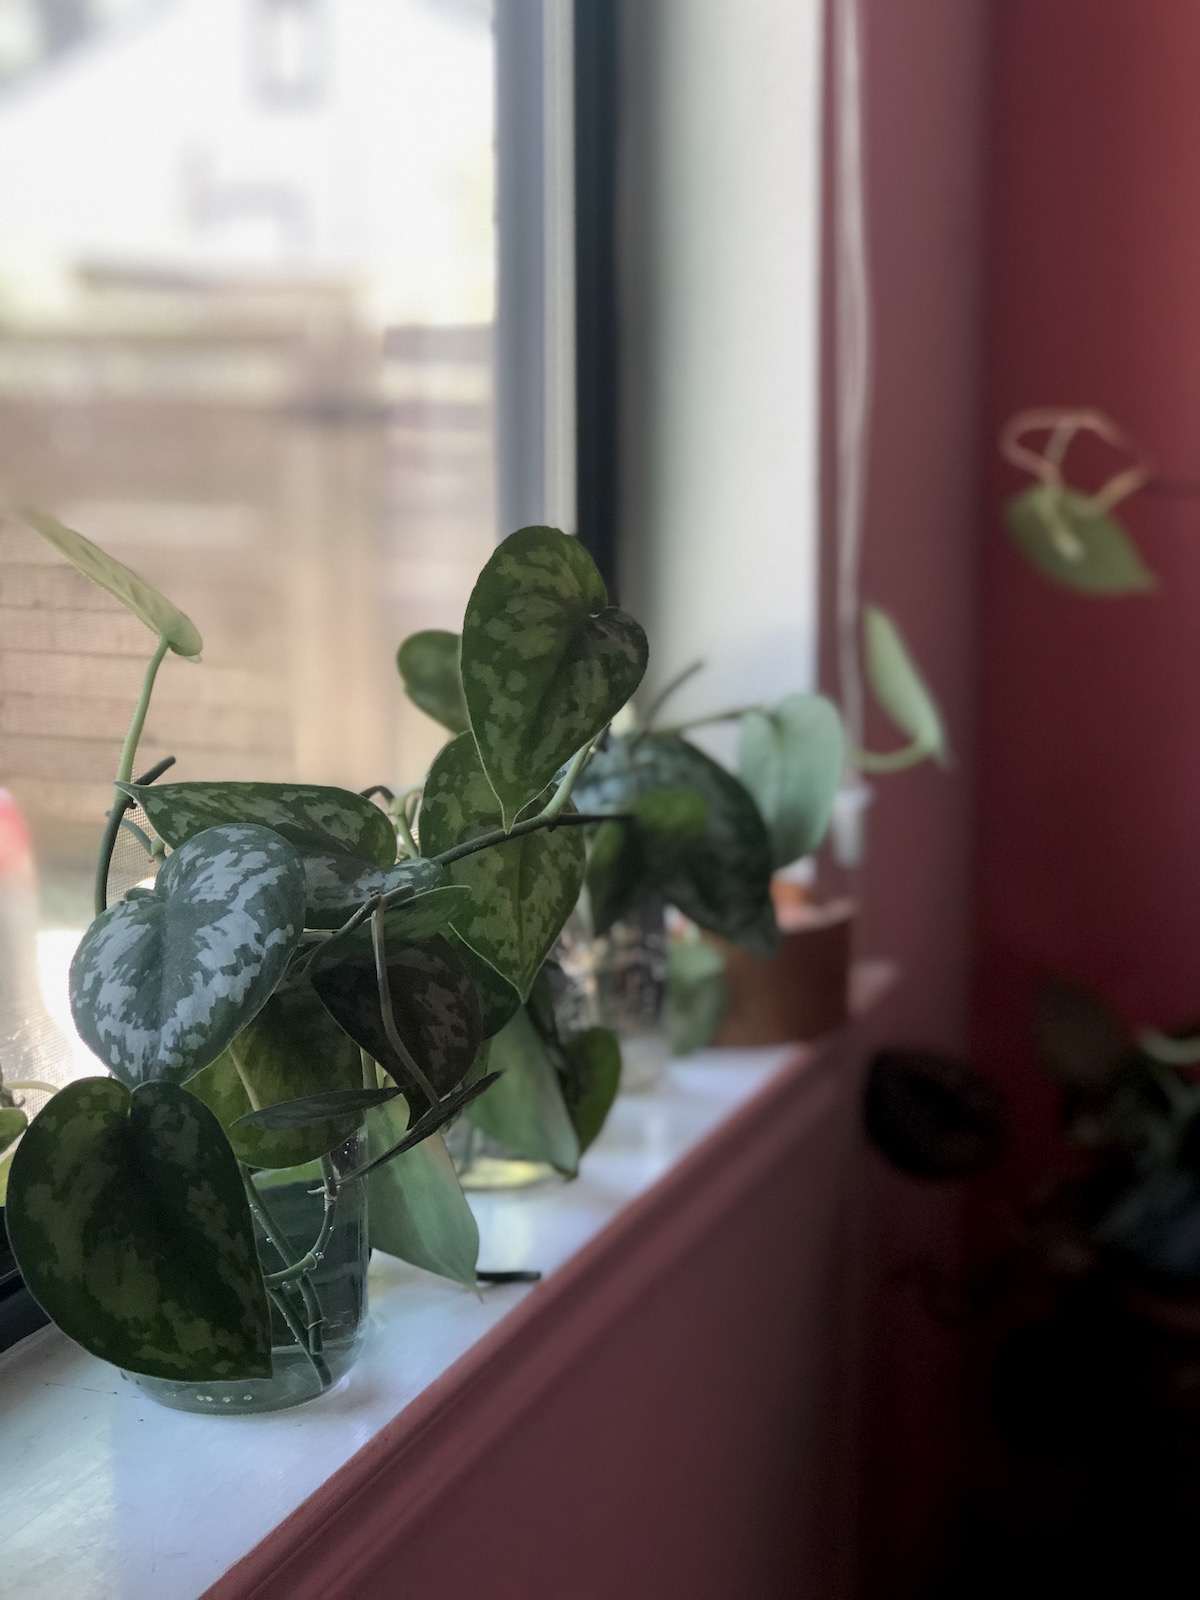 plant-propagation-leaf-cutting-jars-window-display